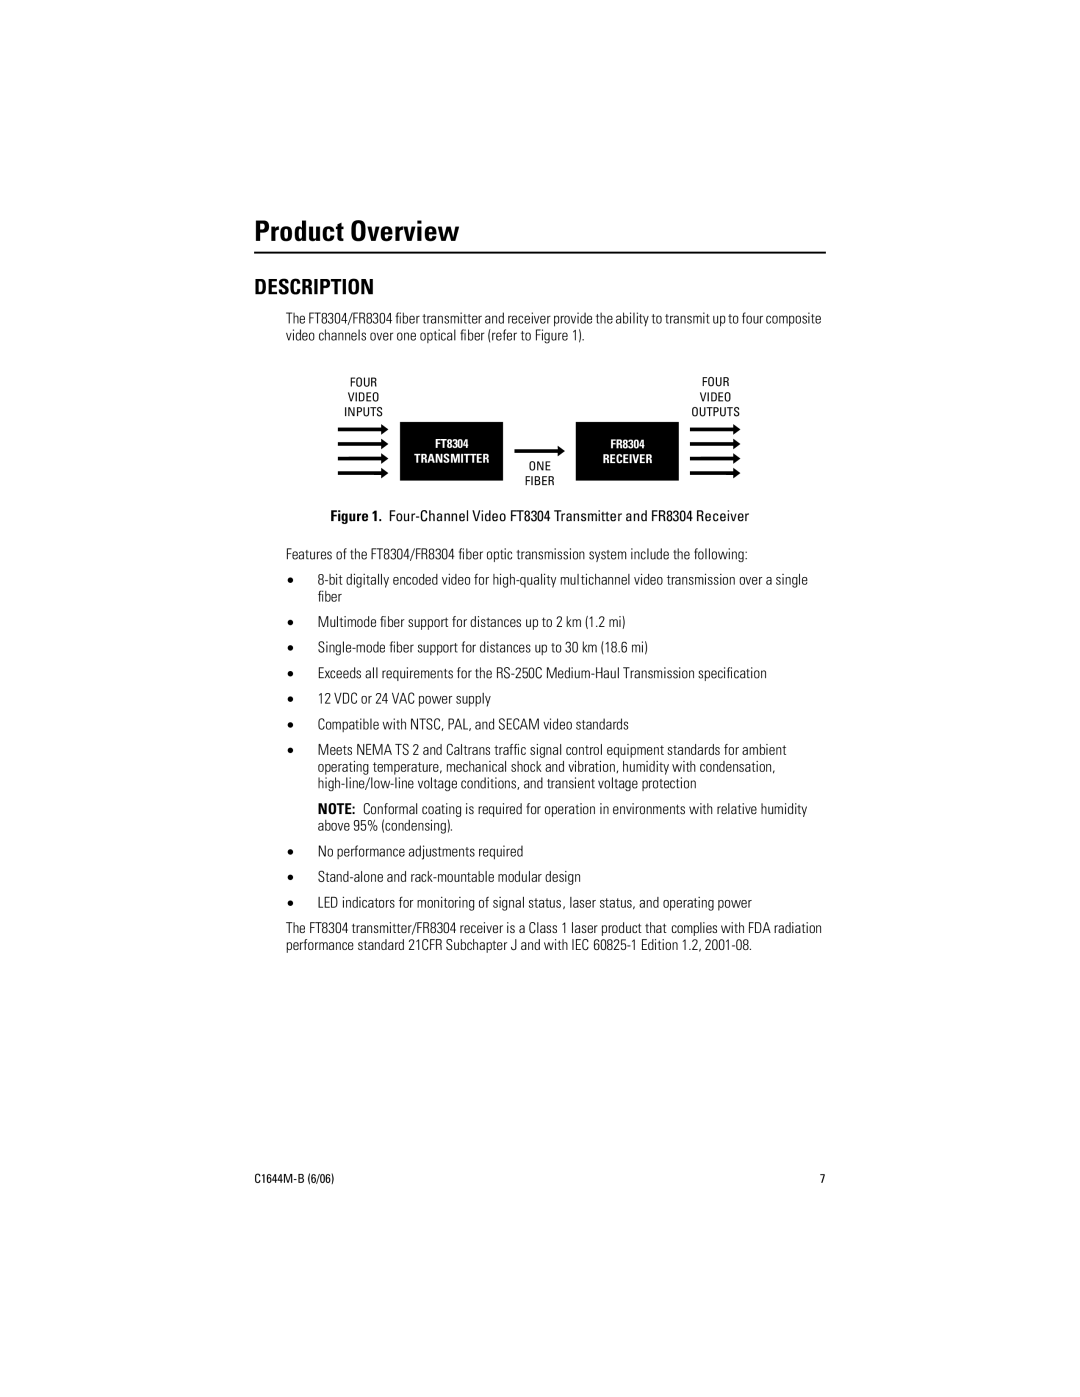 Pelco FR8304 manual Product Overview, Description 